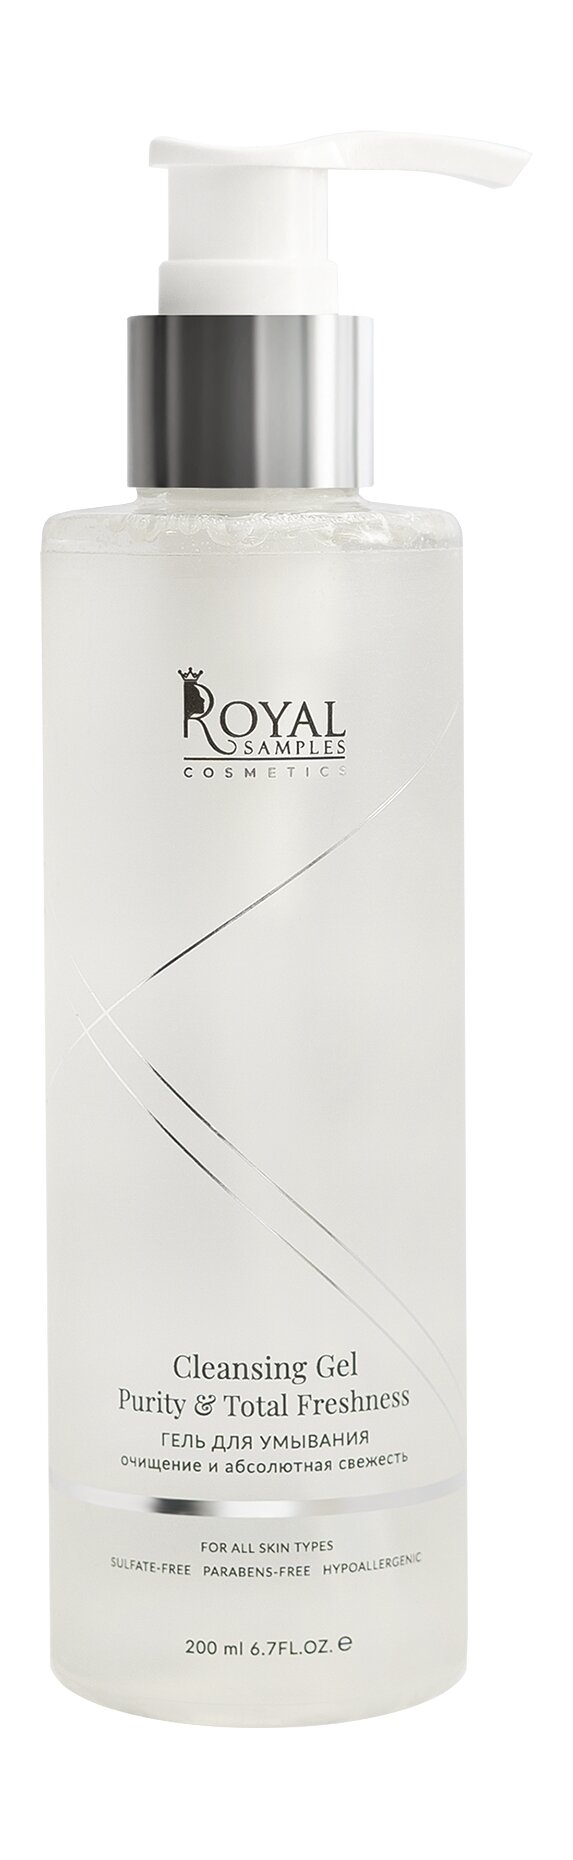 ROYAL SAMPLES Гель для умывания Royal Samples очищение и абсолютная свежесть, 200 мл